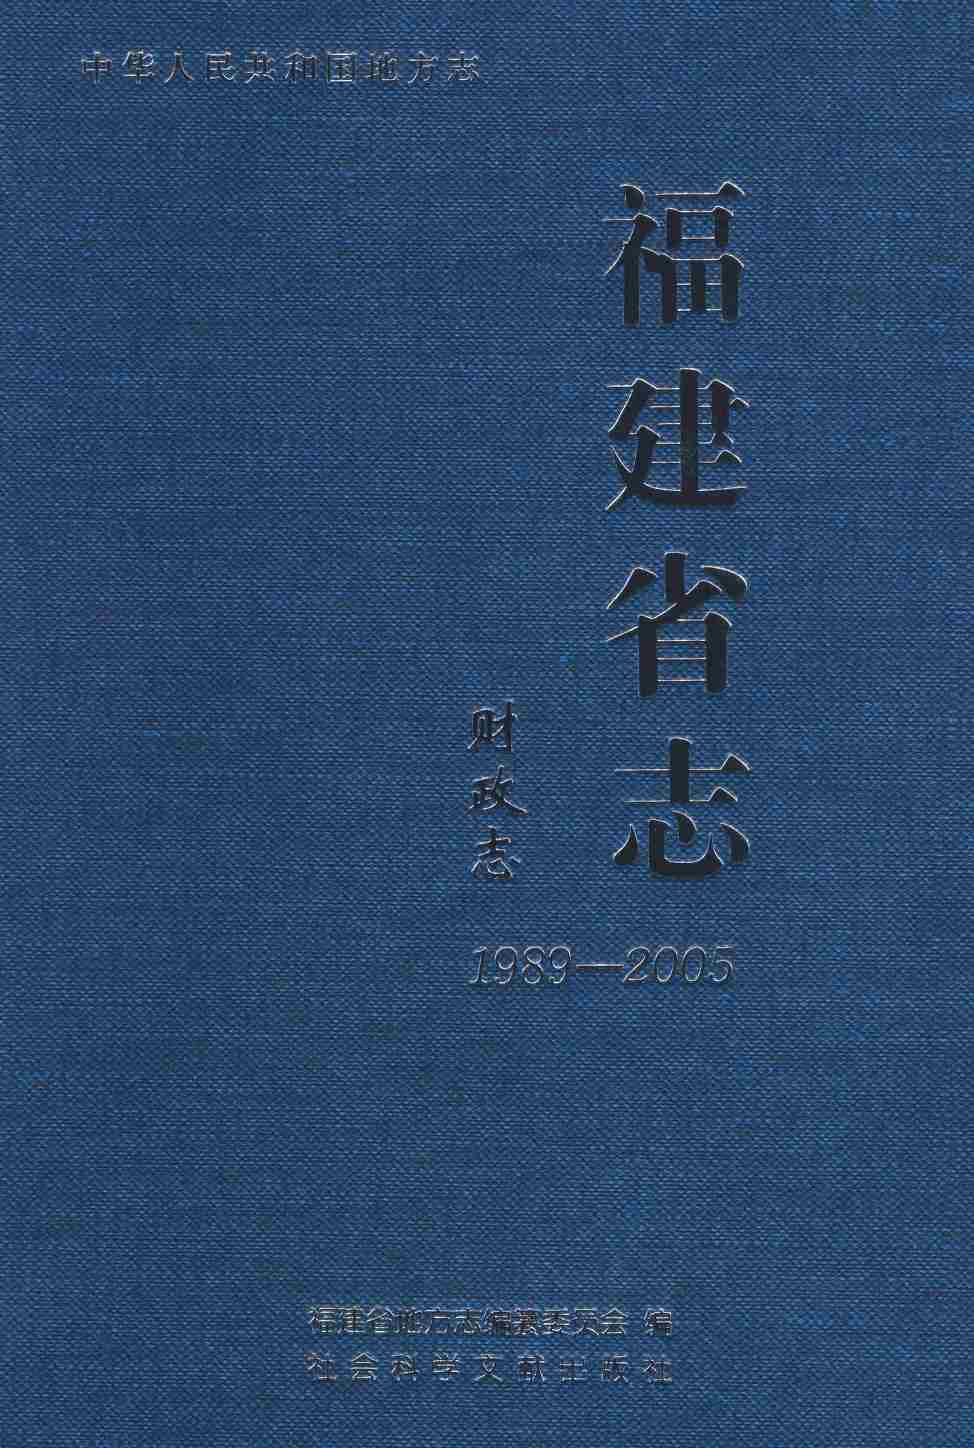 福建省志·财政志1989-2005